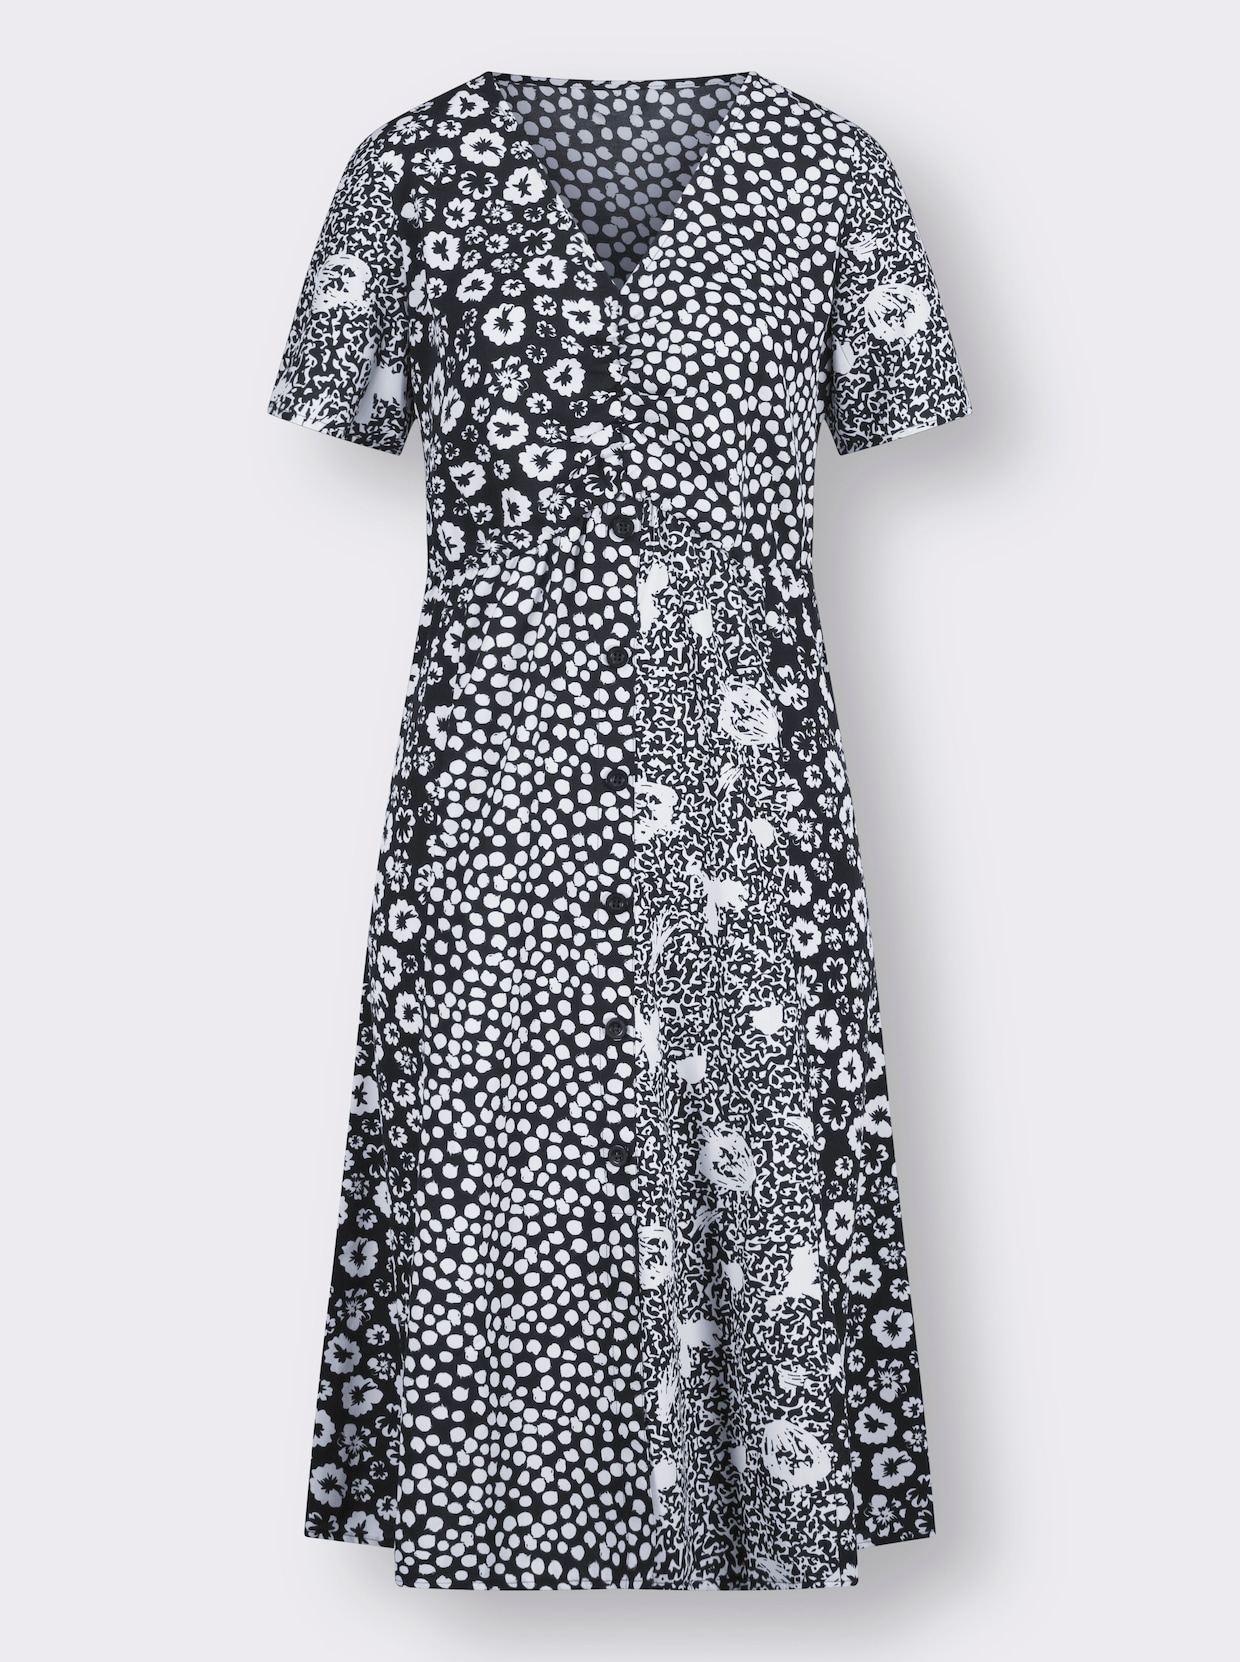 Šaty s potiskem - černá-bílá-vzor